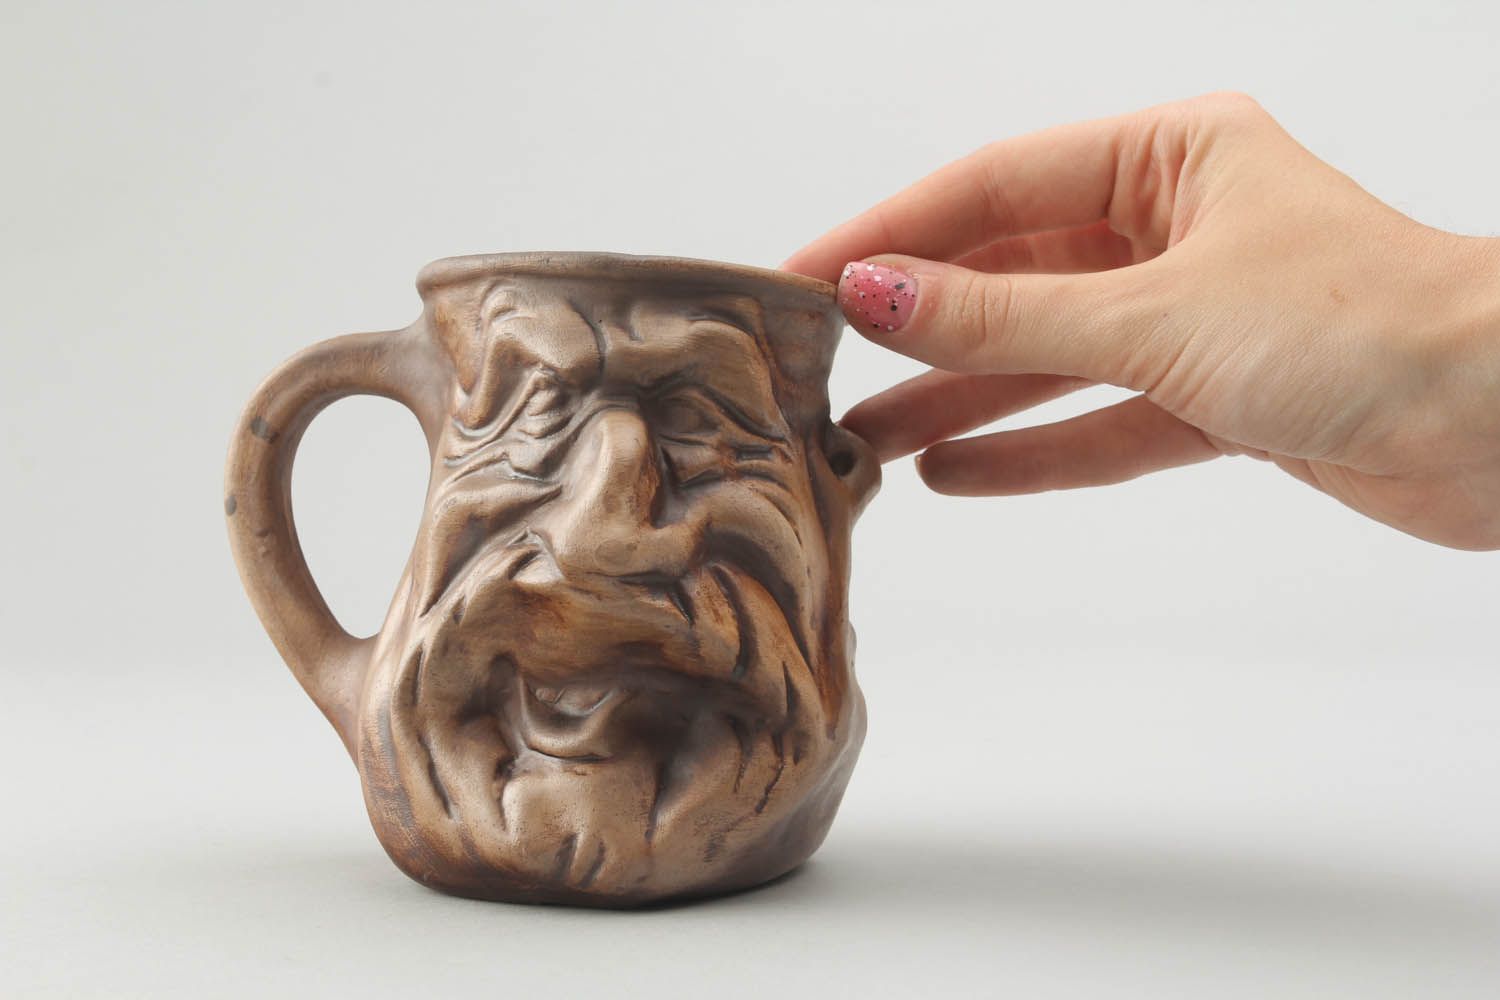 Large 10 oz ceramic decorative drinking mug in old man face shape photo 2